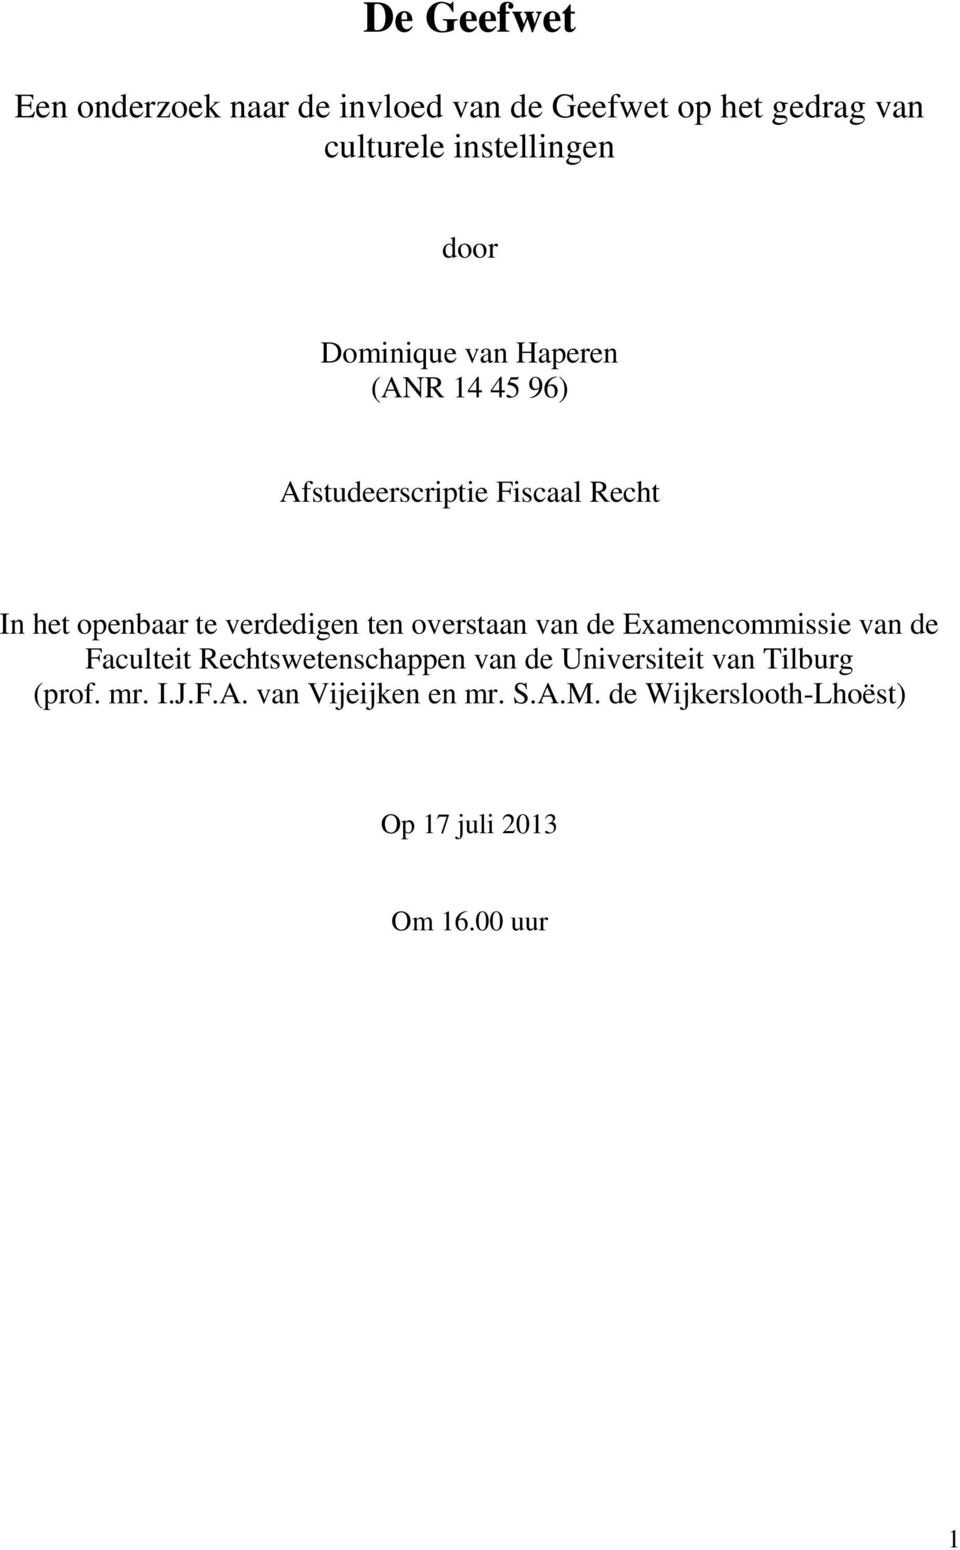 overstaan van de Examencommissie van de Faculteit Rechtswetenschappen van de Universiteit van Tilburg